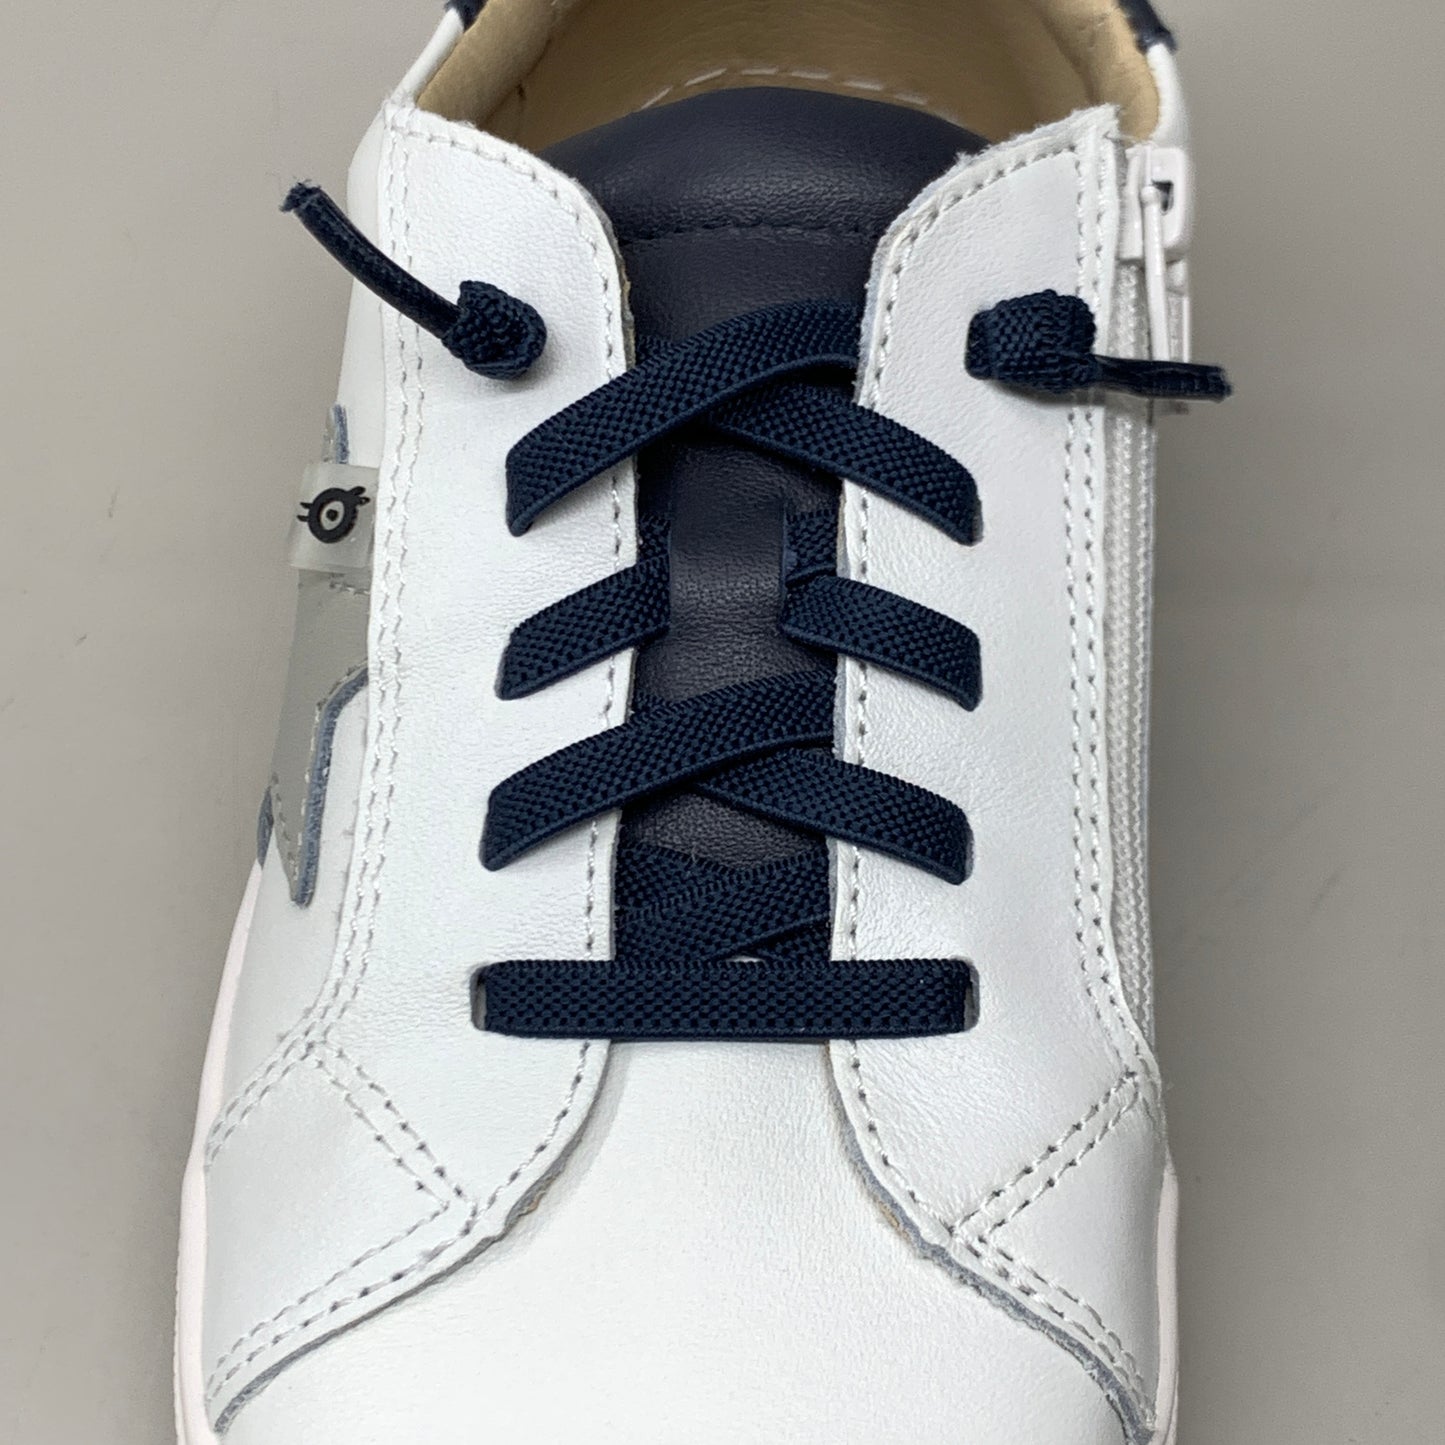 OLD SOLES Comet Runner Sneakers Kid’s Sz 10 EU 27 Snow/Navy/Gris #6149